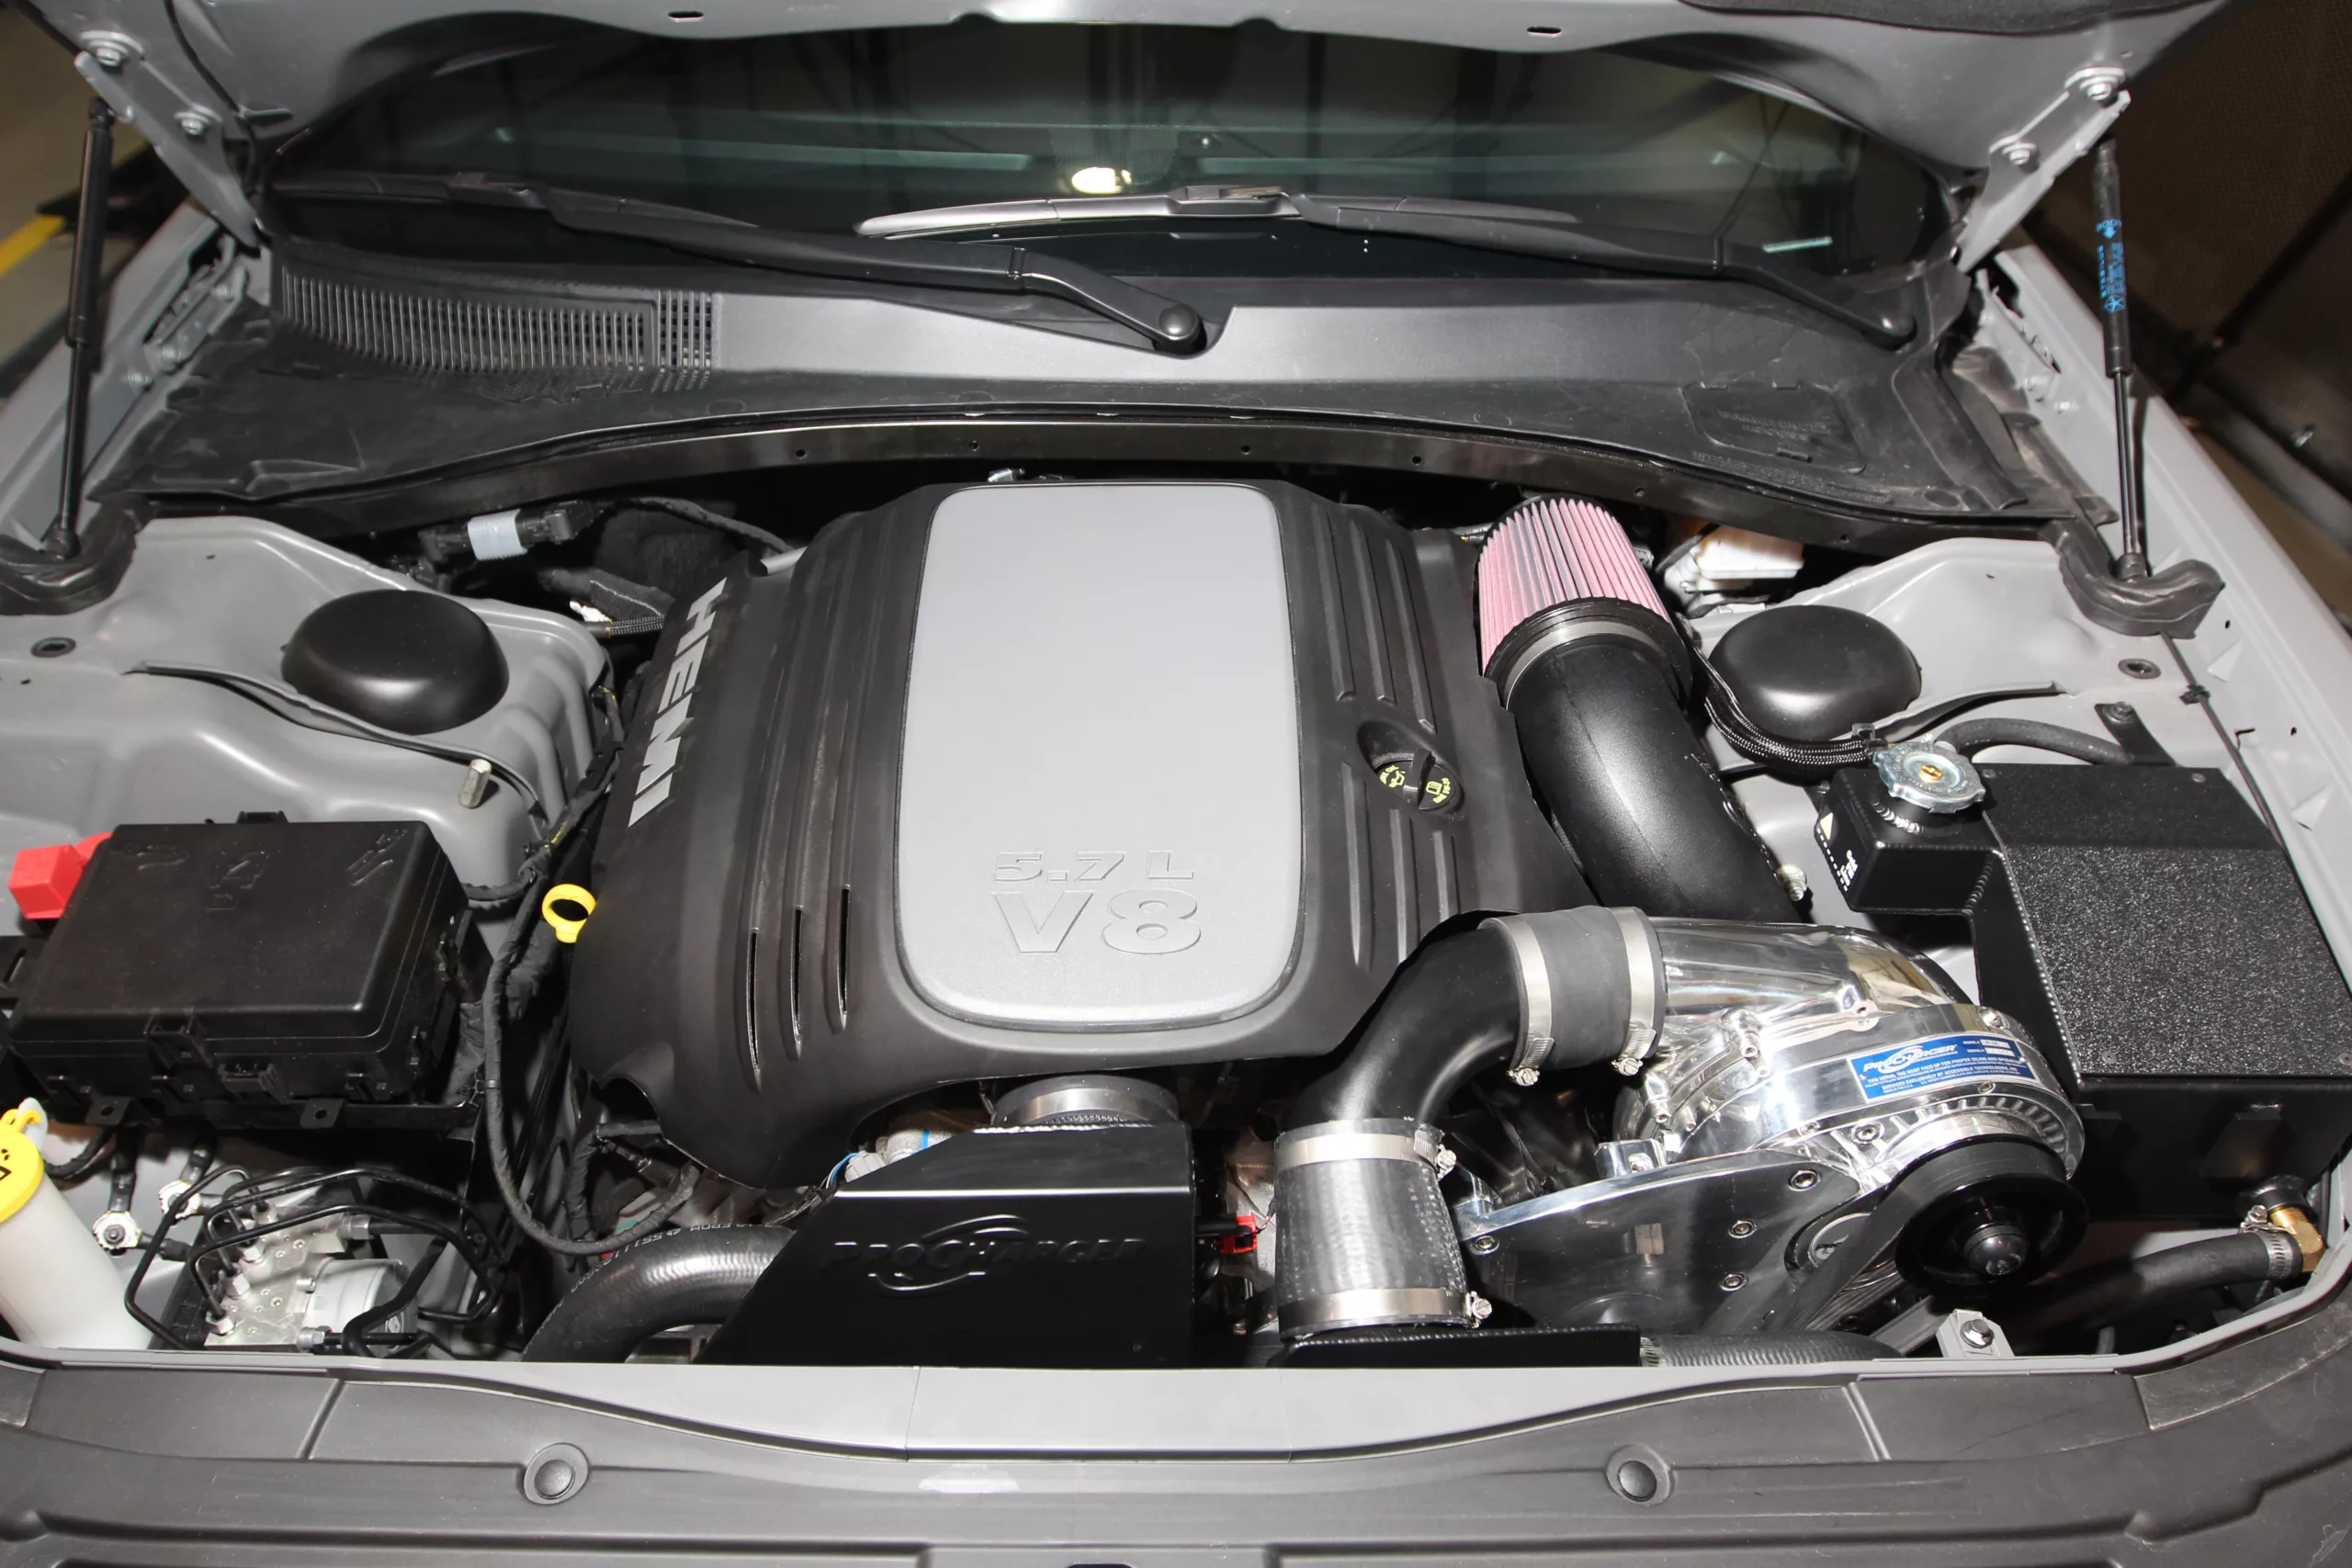 2017 Chrysler 300 5.7 ProCharged underhood